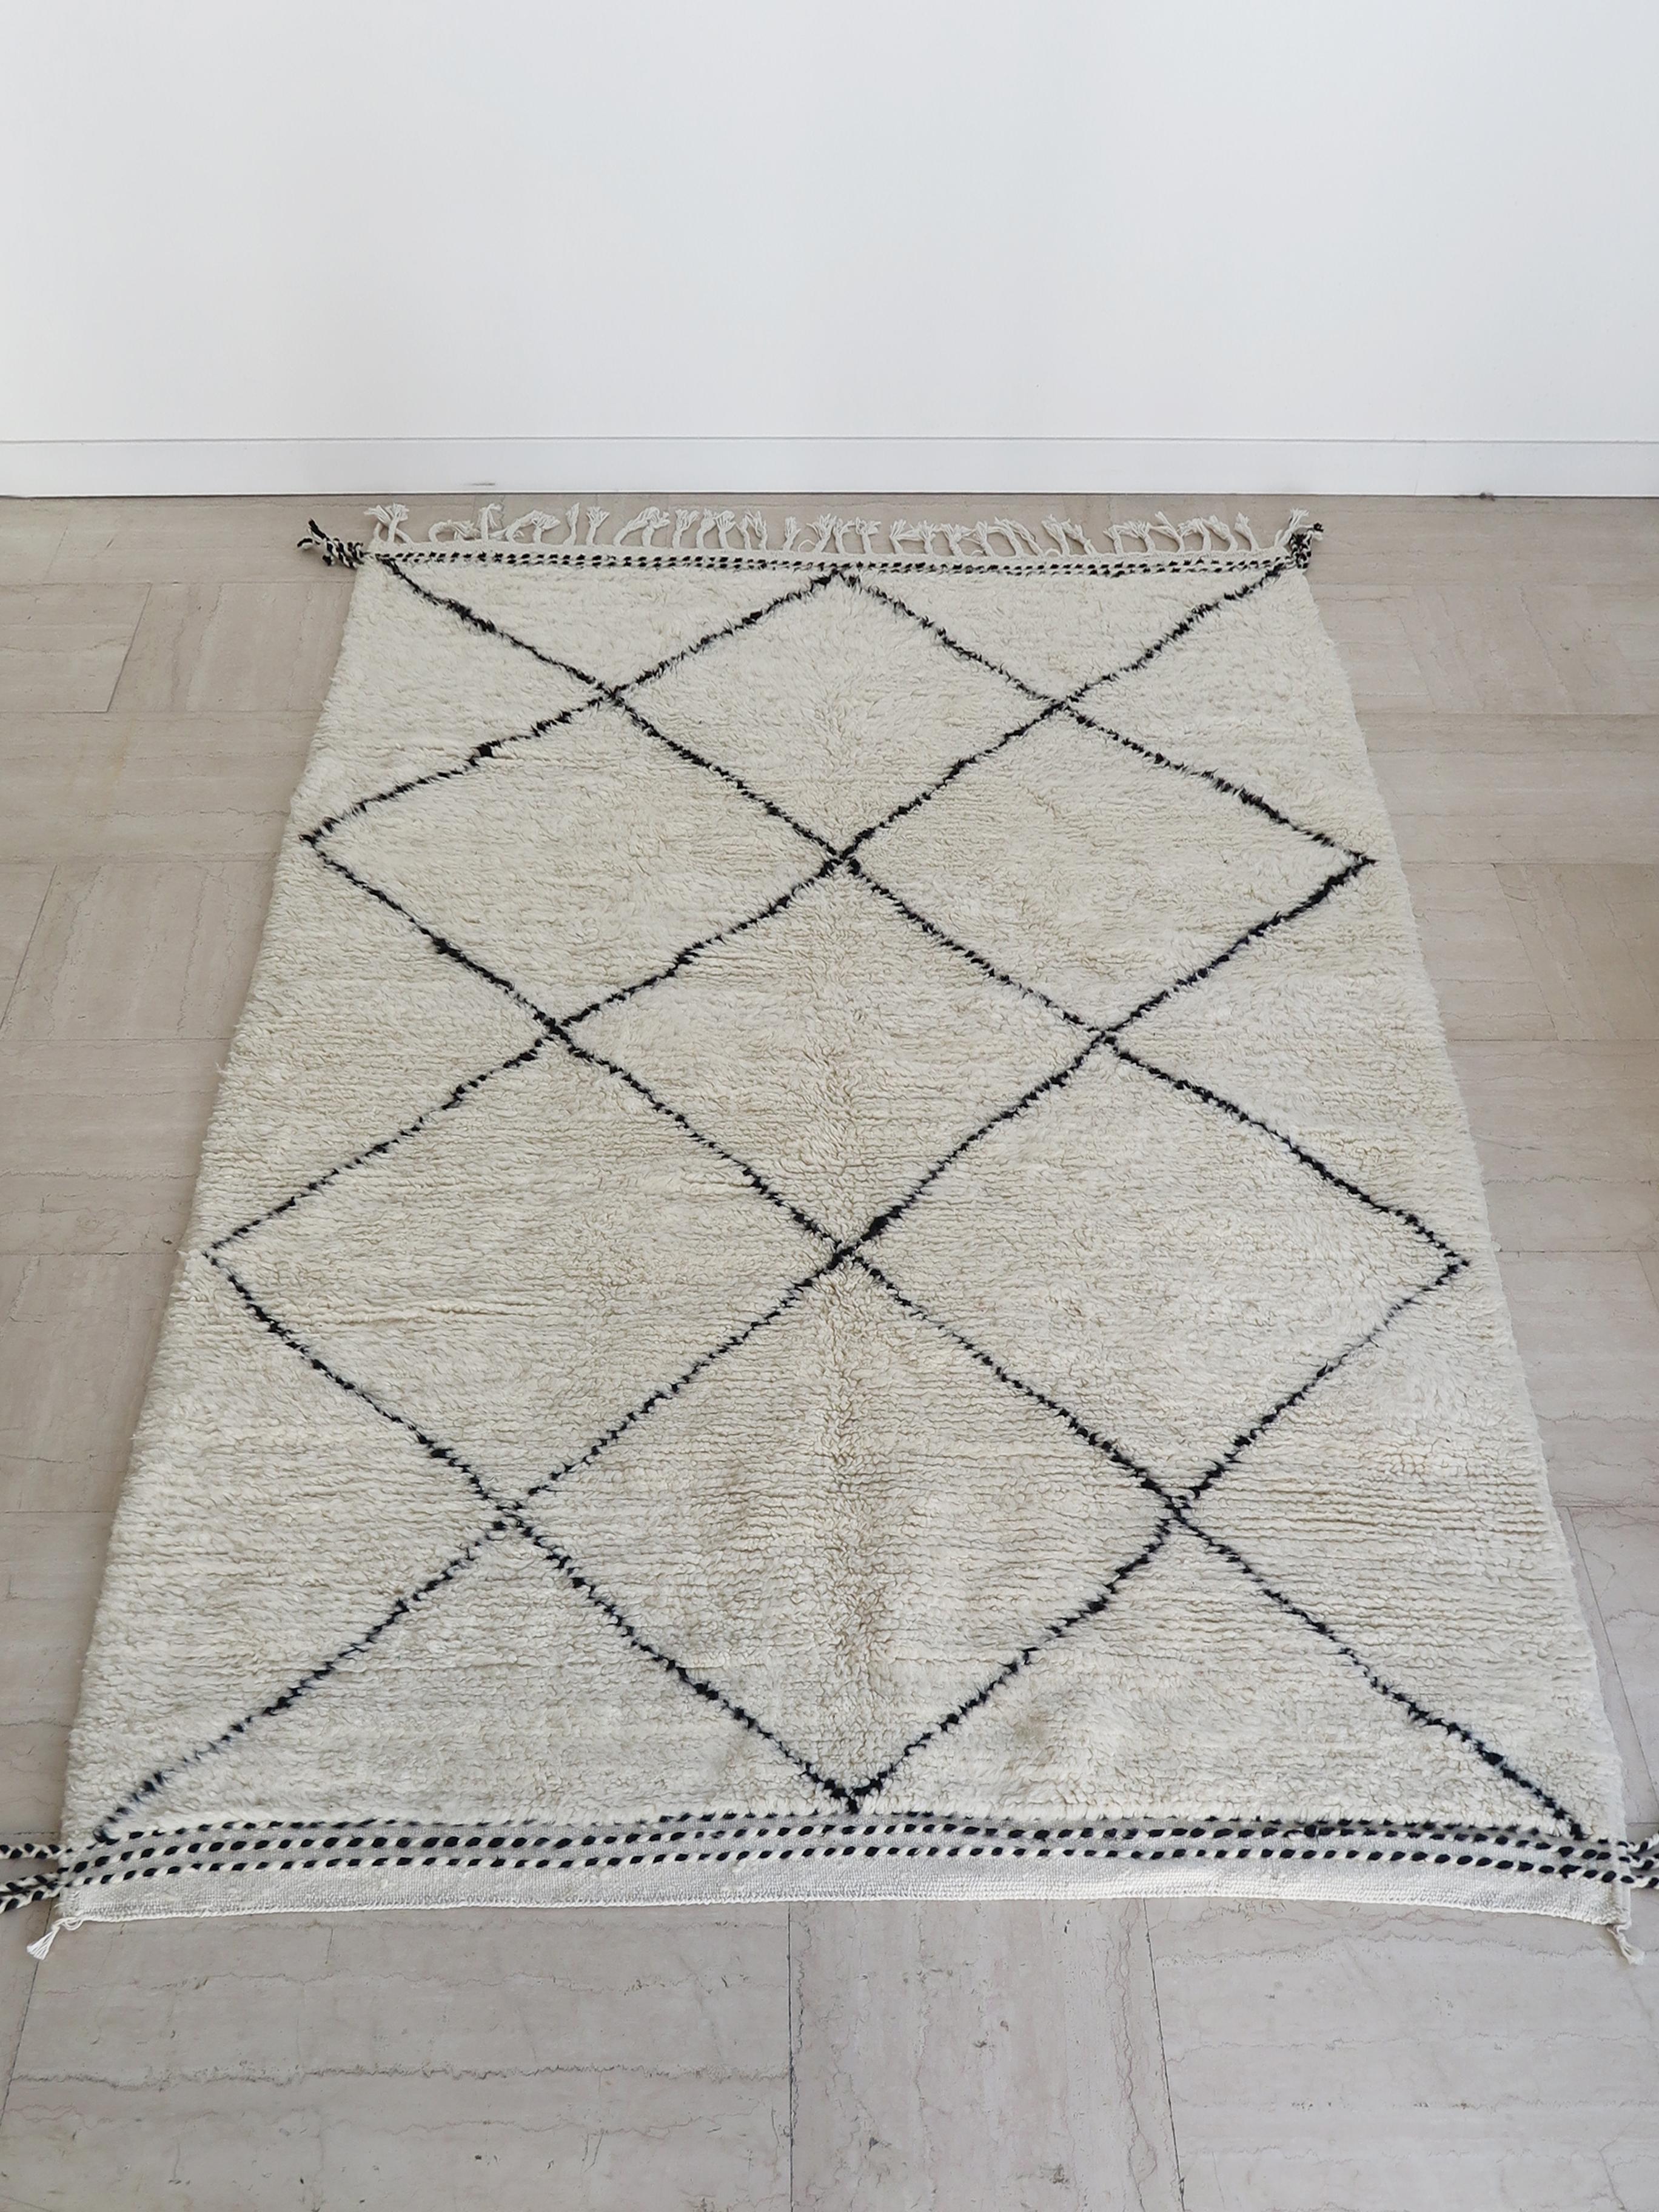 Handgefertigter Berberteppich aus Wolle mit kontrastierendem grafischem Muster,
Marokko Produktion 2000er Jahre